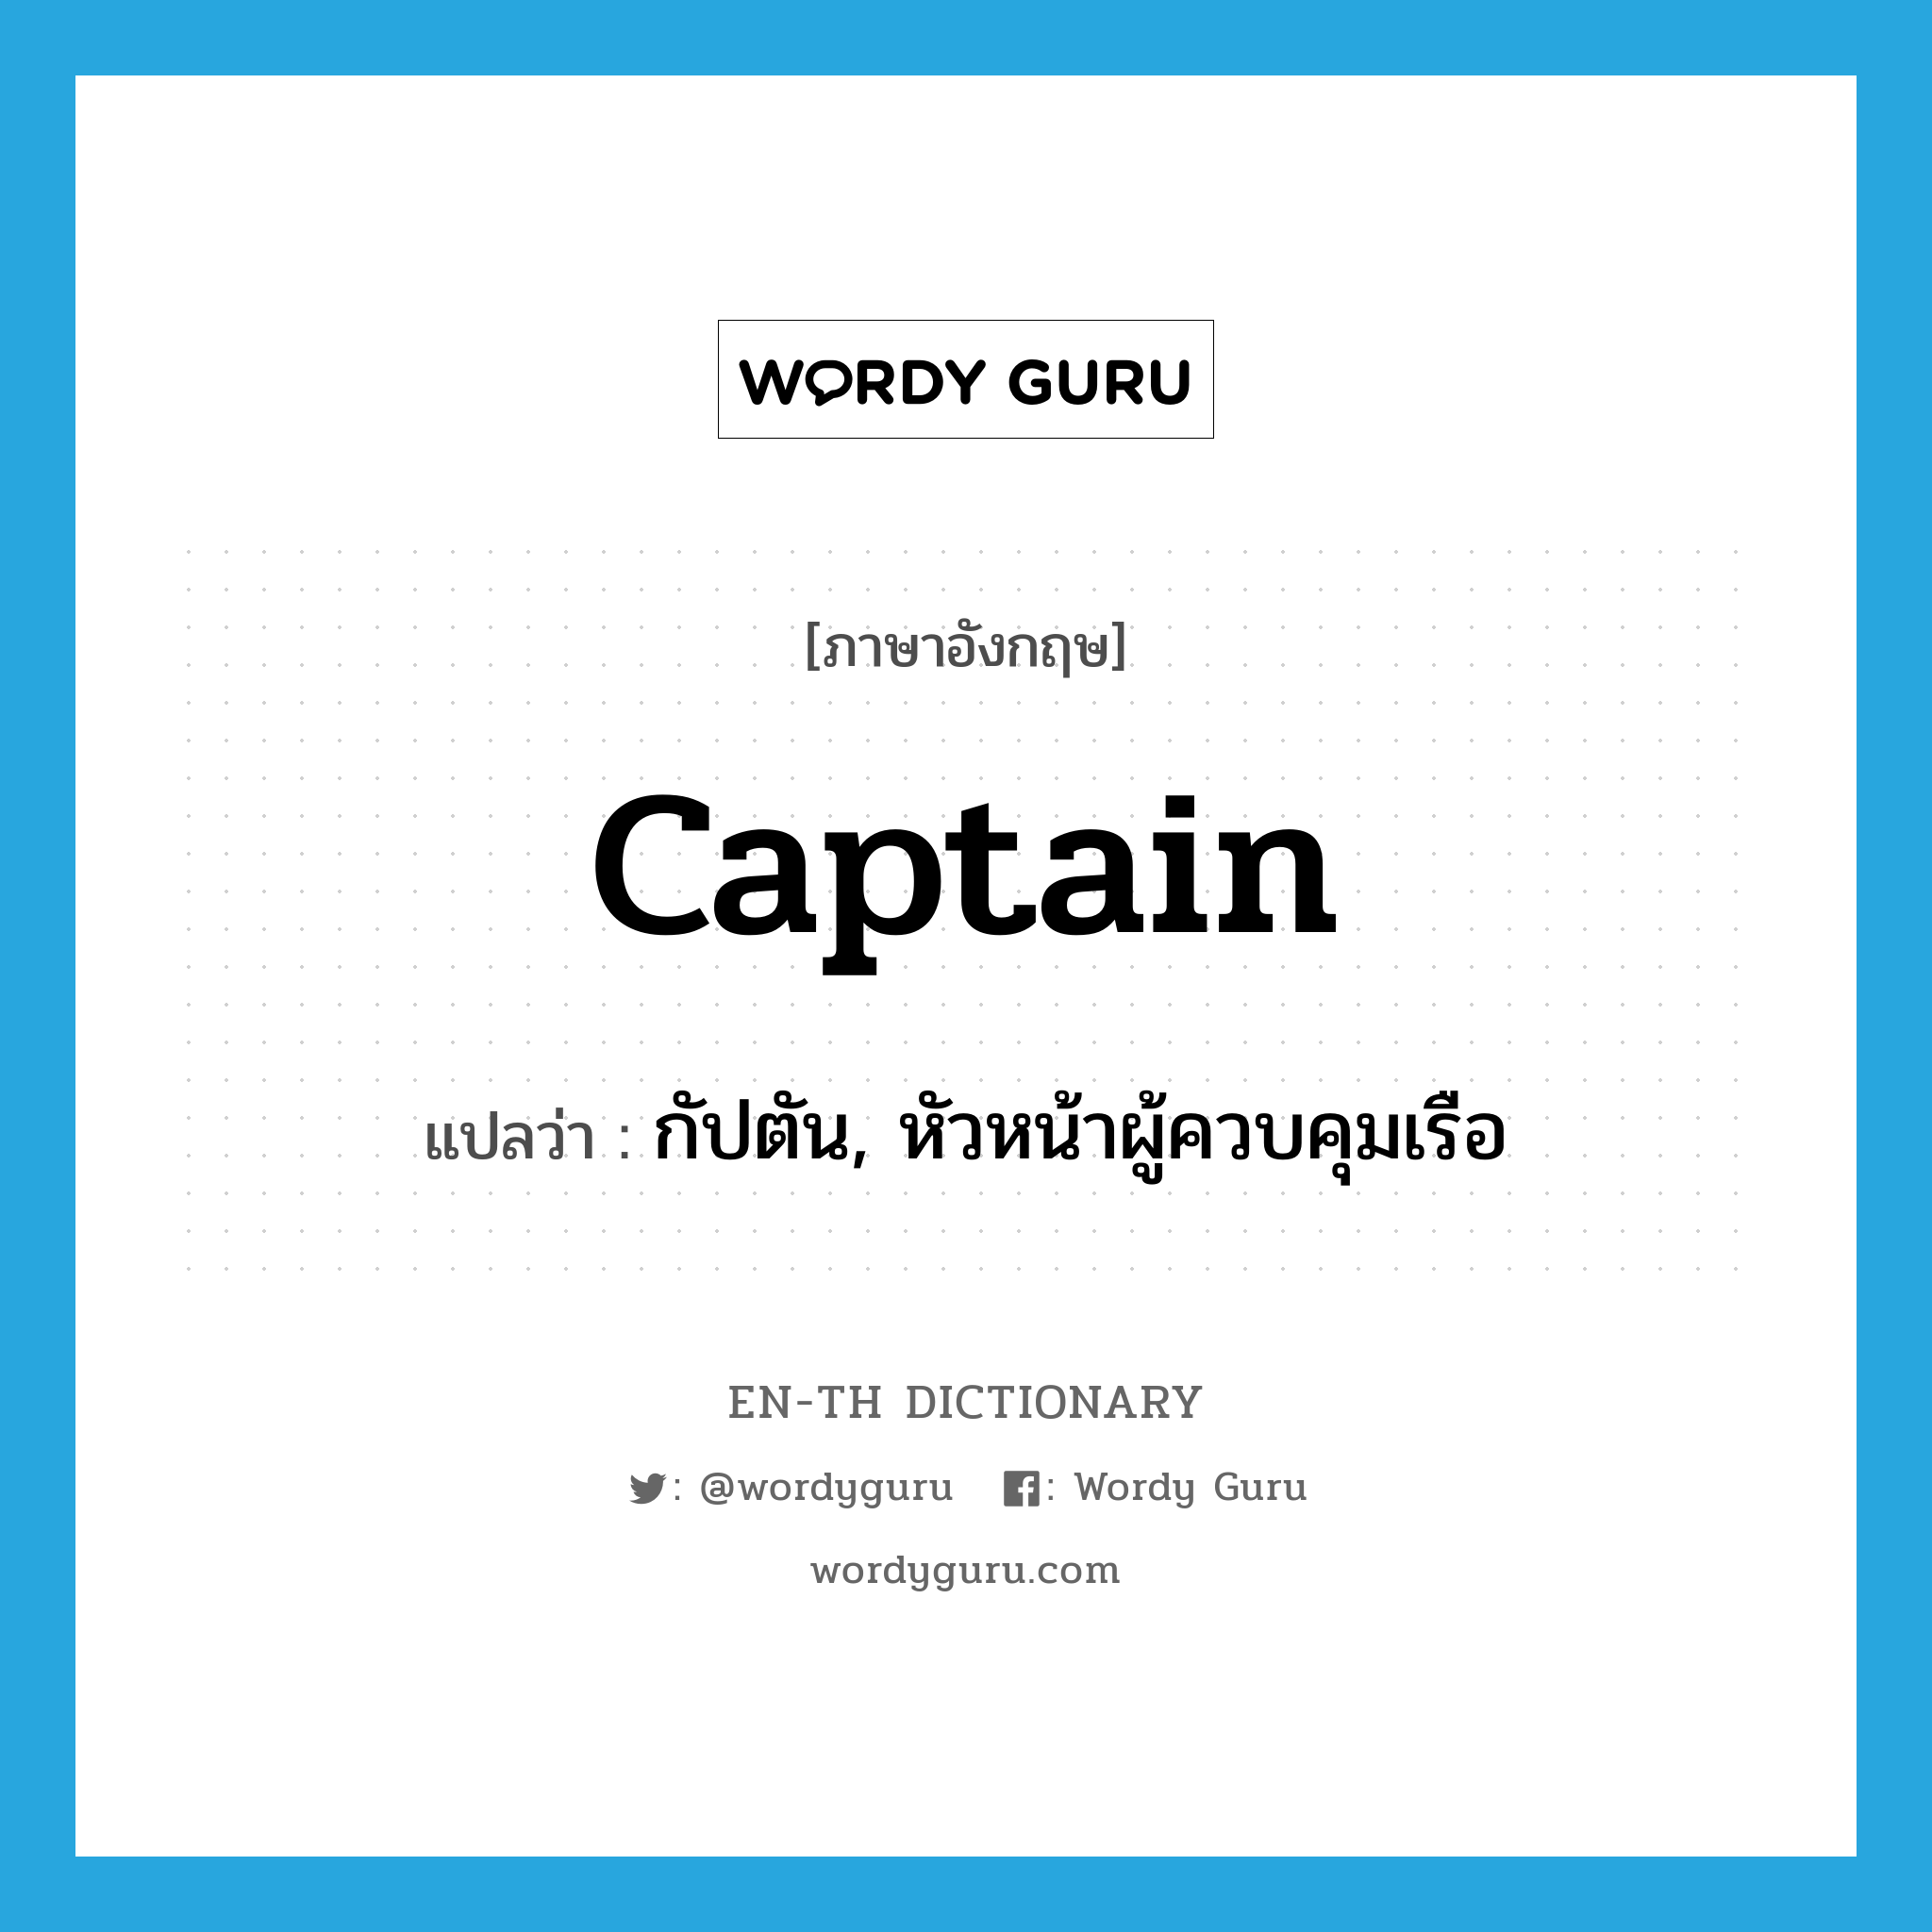 กัปตัน, หัวหน้าผู้ควบคุมเรือ ภาษาอังกฤษ?, คำศัพท์ภาษาอังกฤษ กัปตัน, หัวหน้าผู้ควบคุมเรือ แปลว่า captain ประเภท N หมวด N